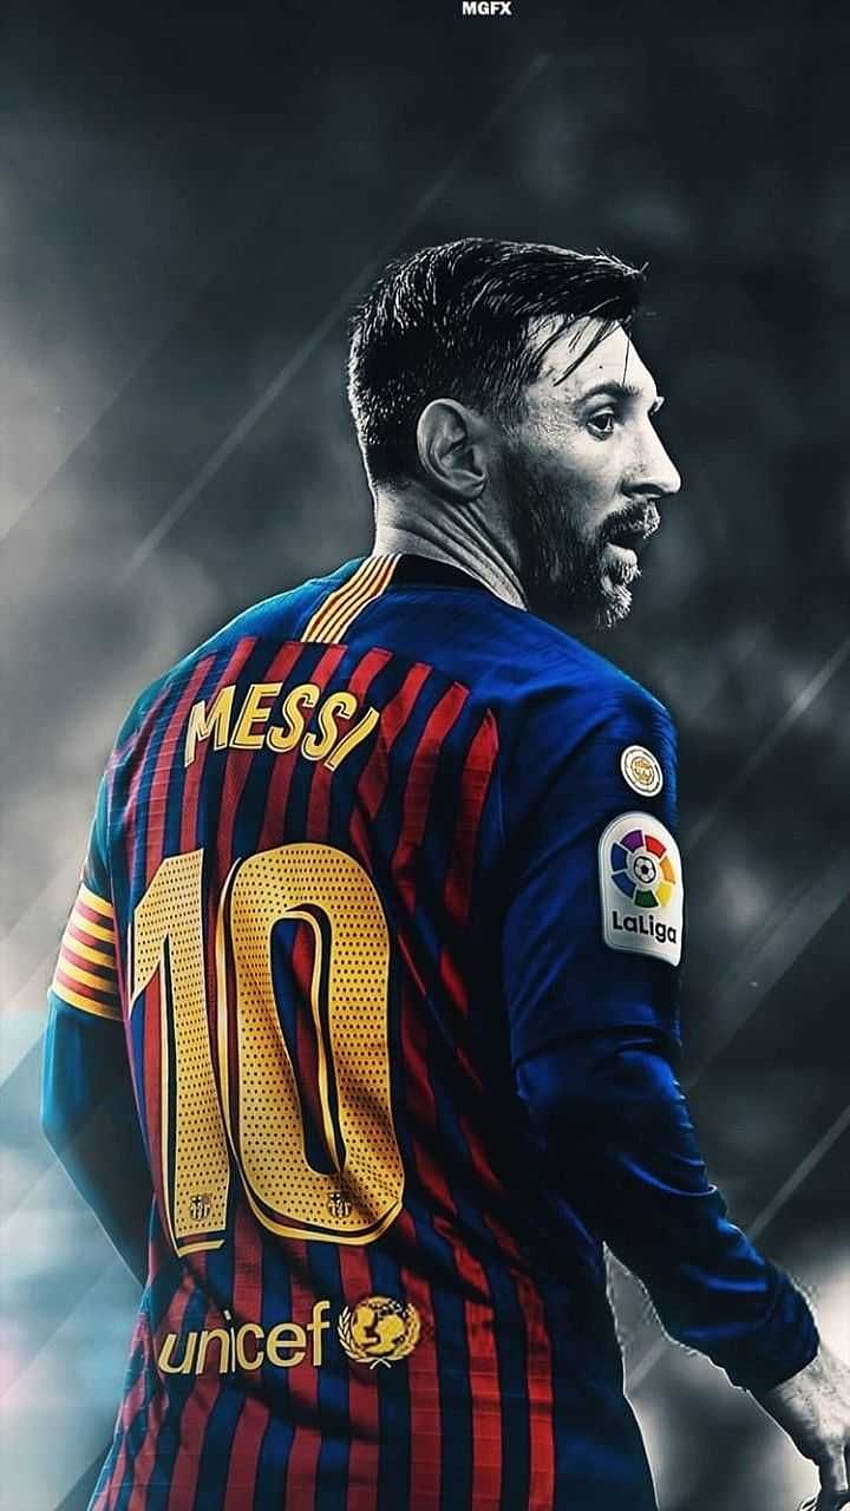 Sở hữu ngay bộ sưu tập hình nền Messi cực chất lượng độ phân giải cao HD: Messi phone wallpaper HD. Hãy tận hưởng cảm giác sáng tạo và tràn đầy năng lượng mỗi khi mở màn hình điện thoại cùng những hình ảnh đẹp đến nao lòng về Messi.